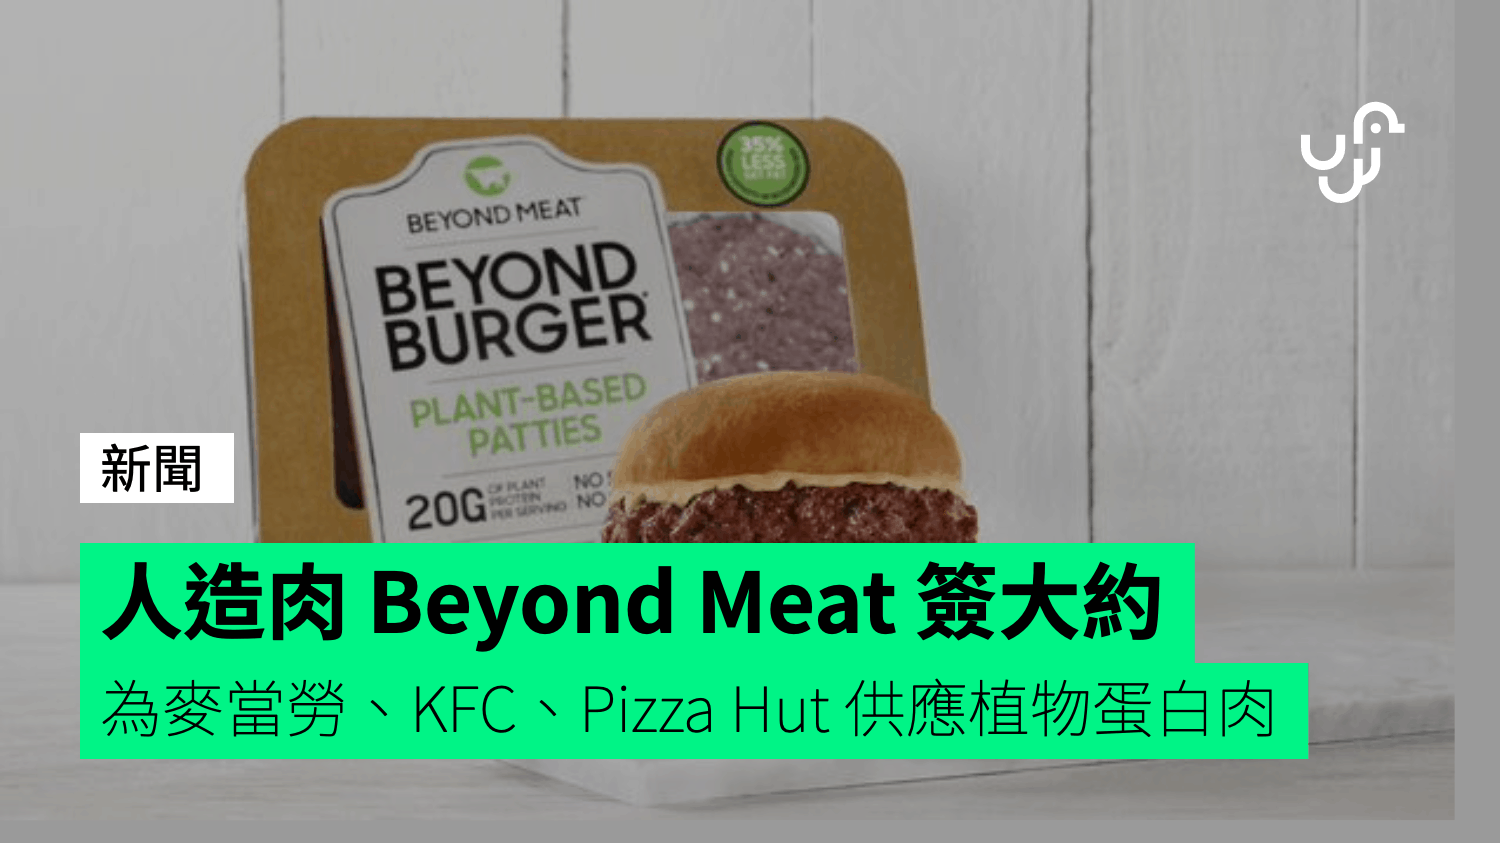 人造肉 Beyond Meat 簽大約 為麥當勞、KFC、Pizza Hut 供應植物蛋白肉